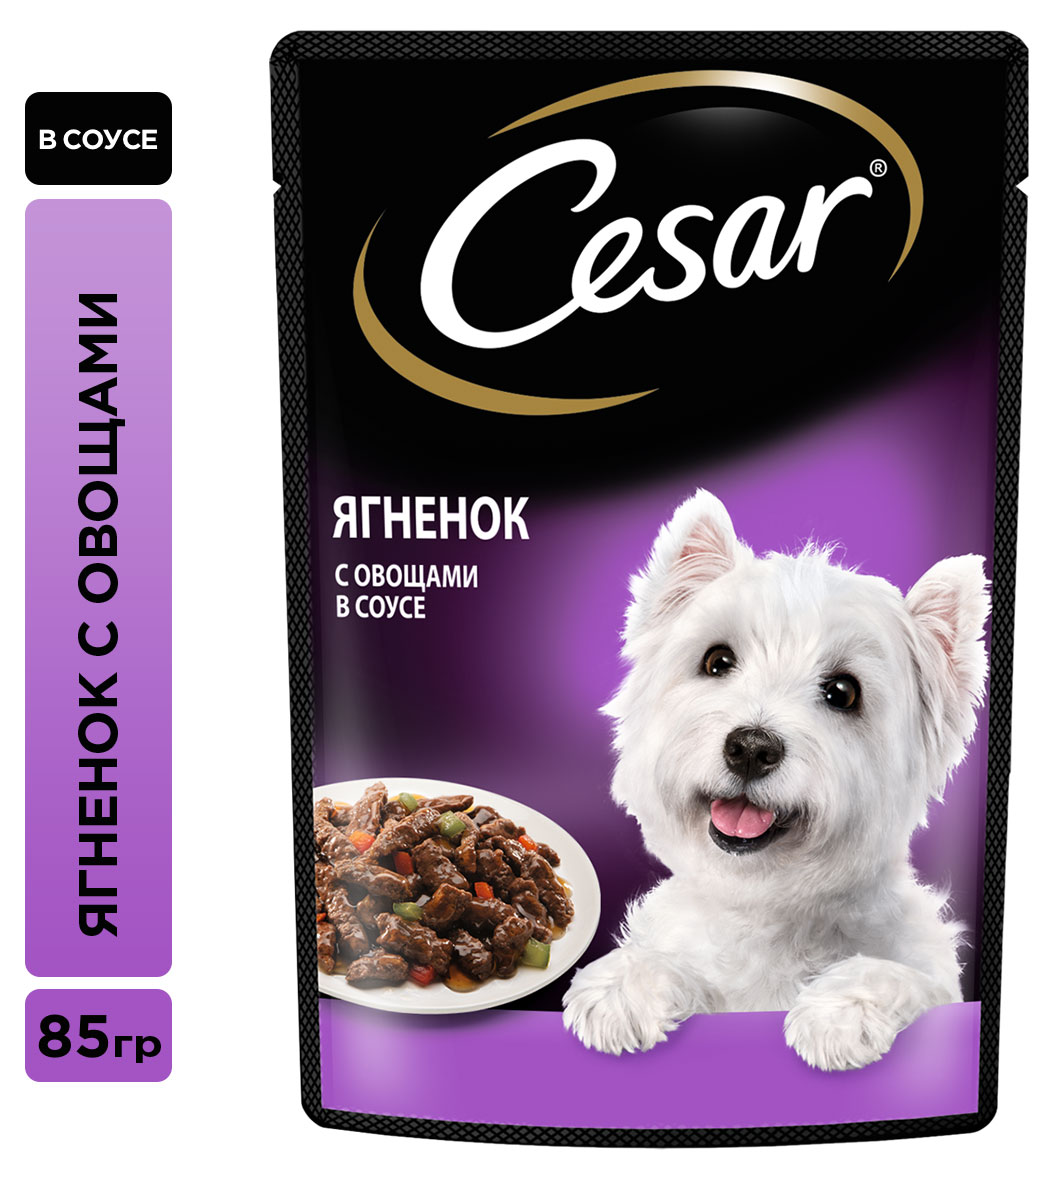 Cesar | Влажный корм для собак Cesar с ягненком и овощами в соусе, 85 г